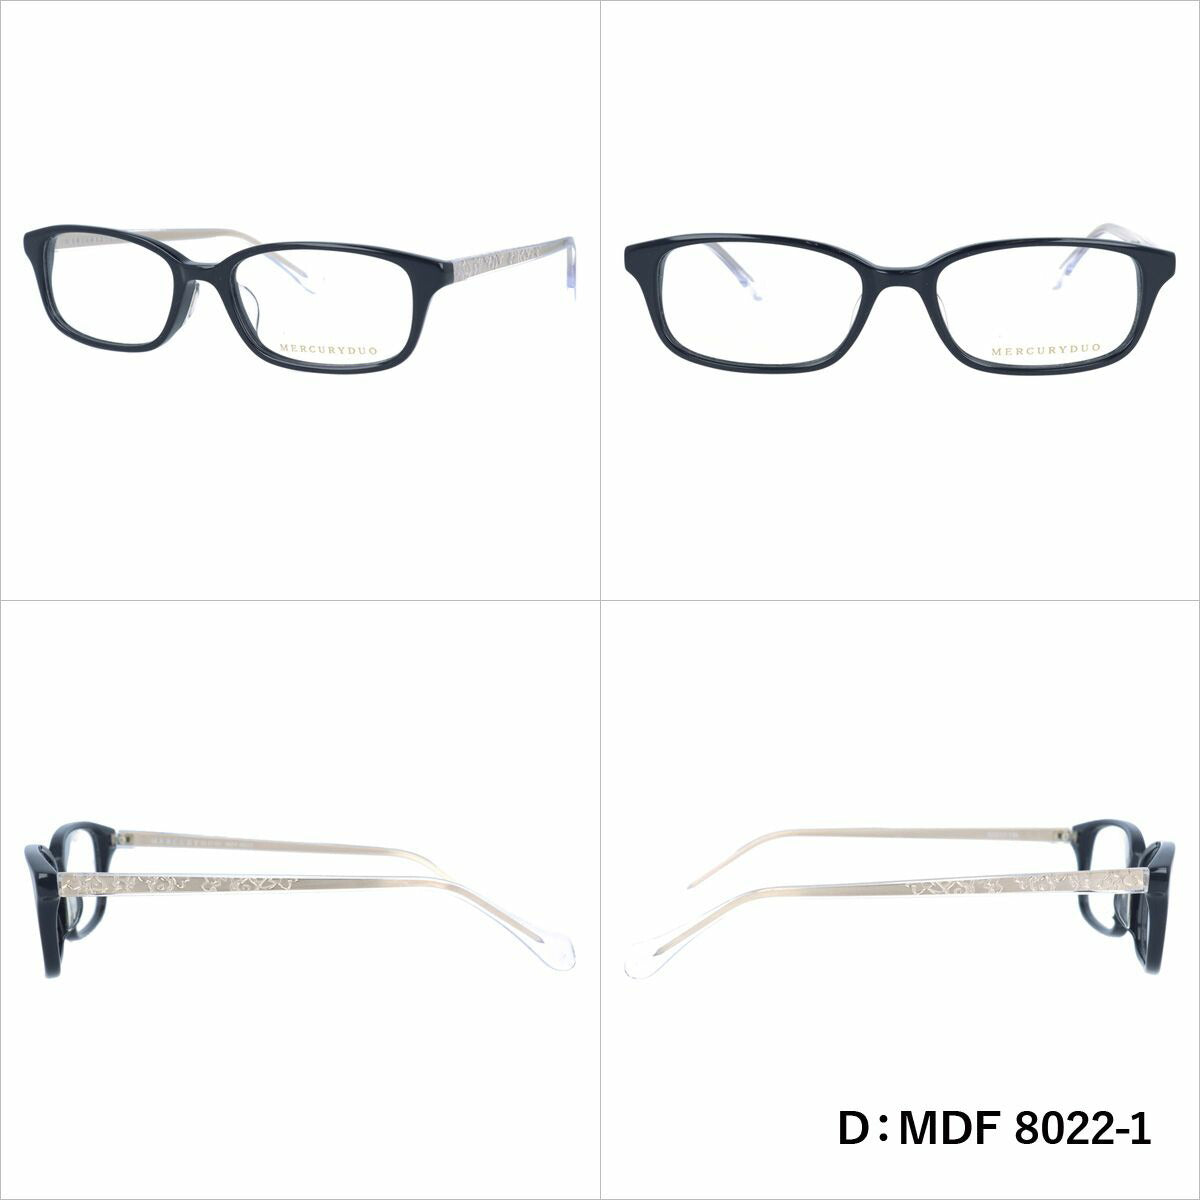 マーキュリーデュオ リーディンググラス フレーム レディース ブランド 度付き 度入り メガネ 眼鏡 アジアンフィット MERCURYDUO MDF 8015-1 / MDF 8025-1 / MDF 8026-1 / MDF 8022-1 レディース 女性 プレゼント